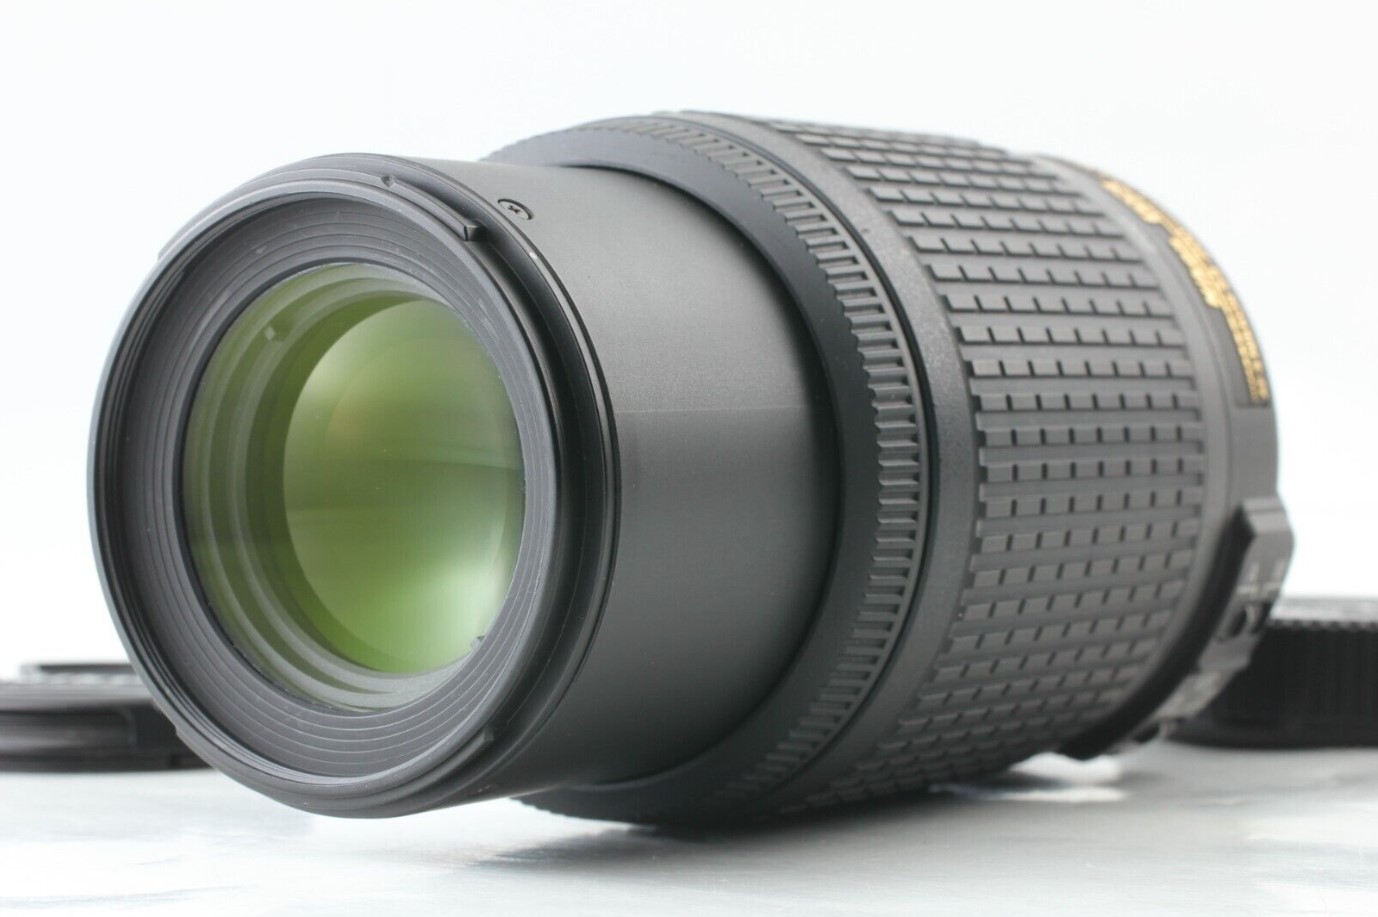 Nikon DX AF-S Nikkor 55-200mm f/4-5.6 G ED IF VR Zoom